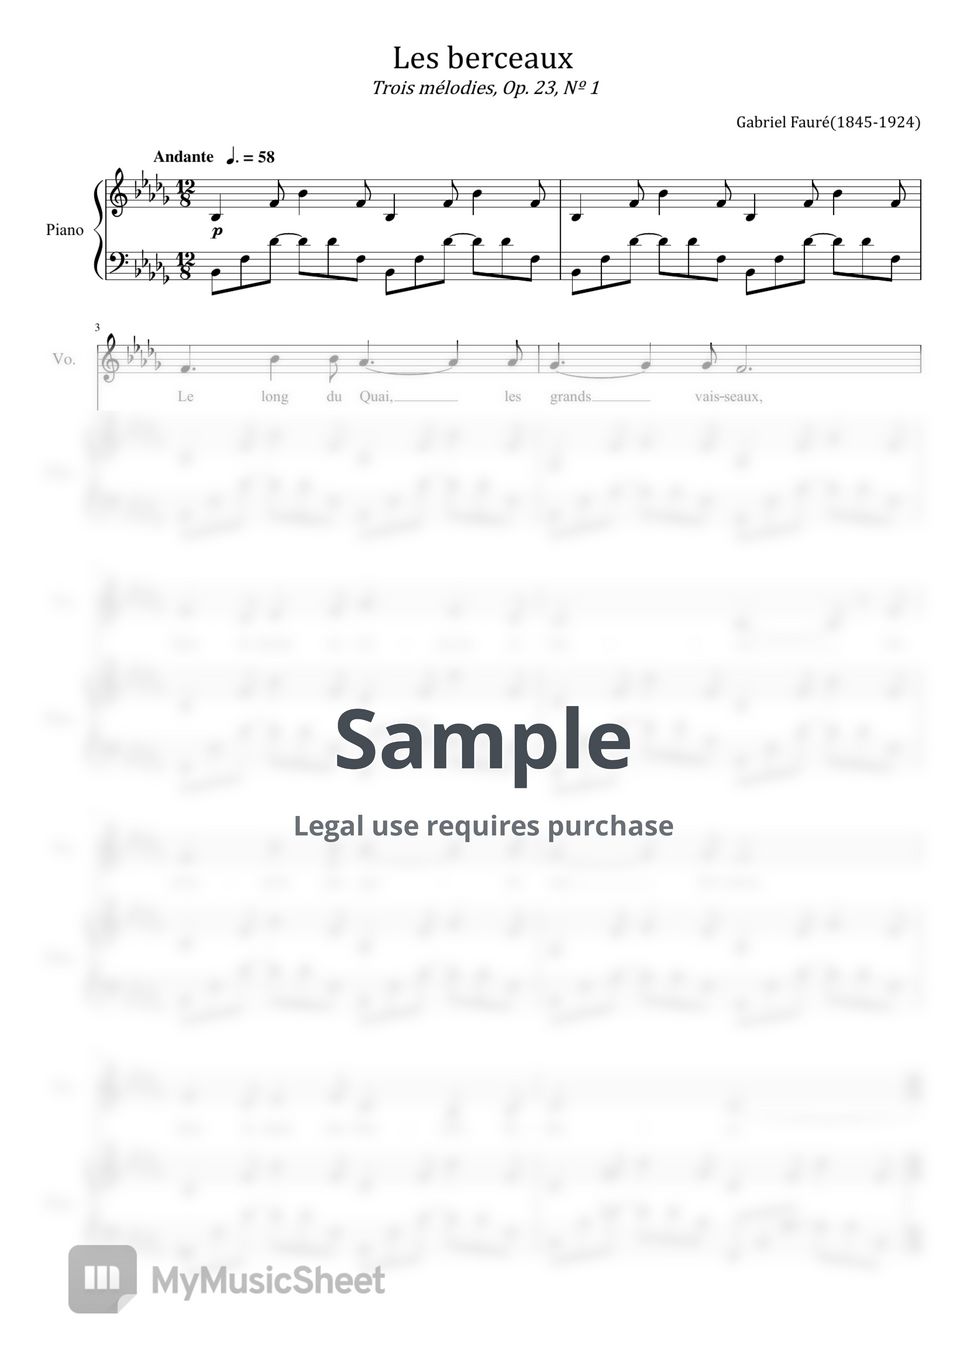 Gabriel Fauré - Les Berceaux (Gabriel Fauré - 3 Songs, Op.23 No.1 - For Voice and Piano Original) by poon